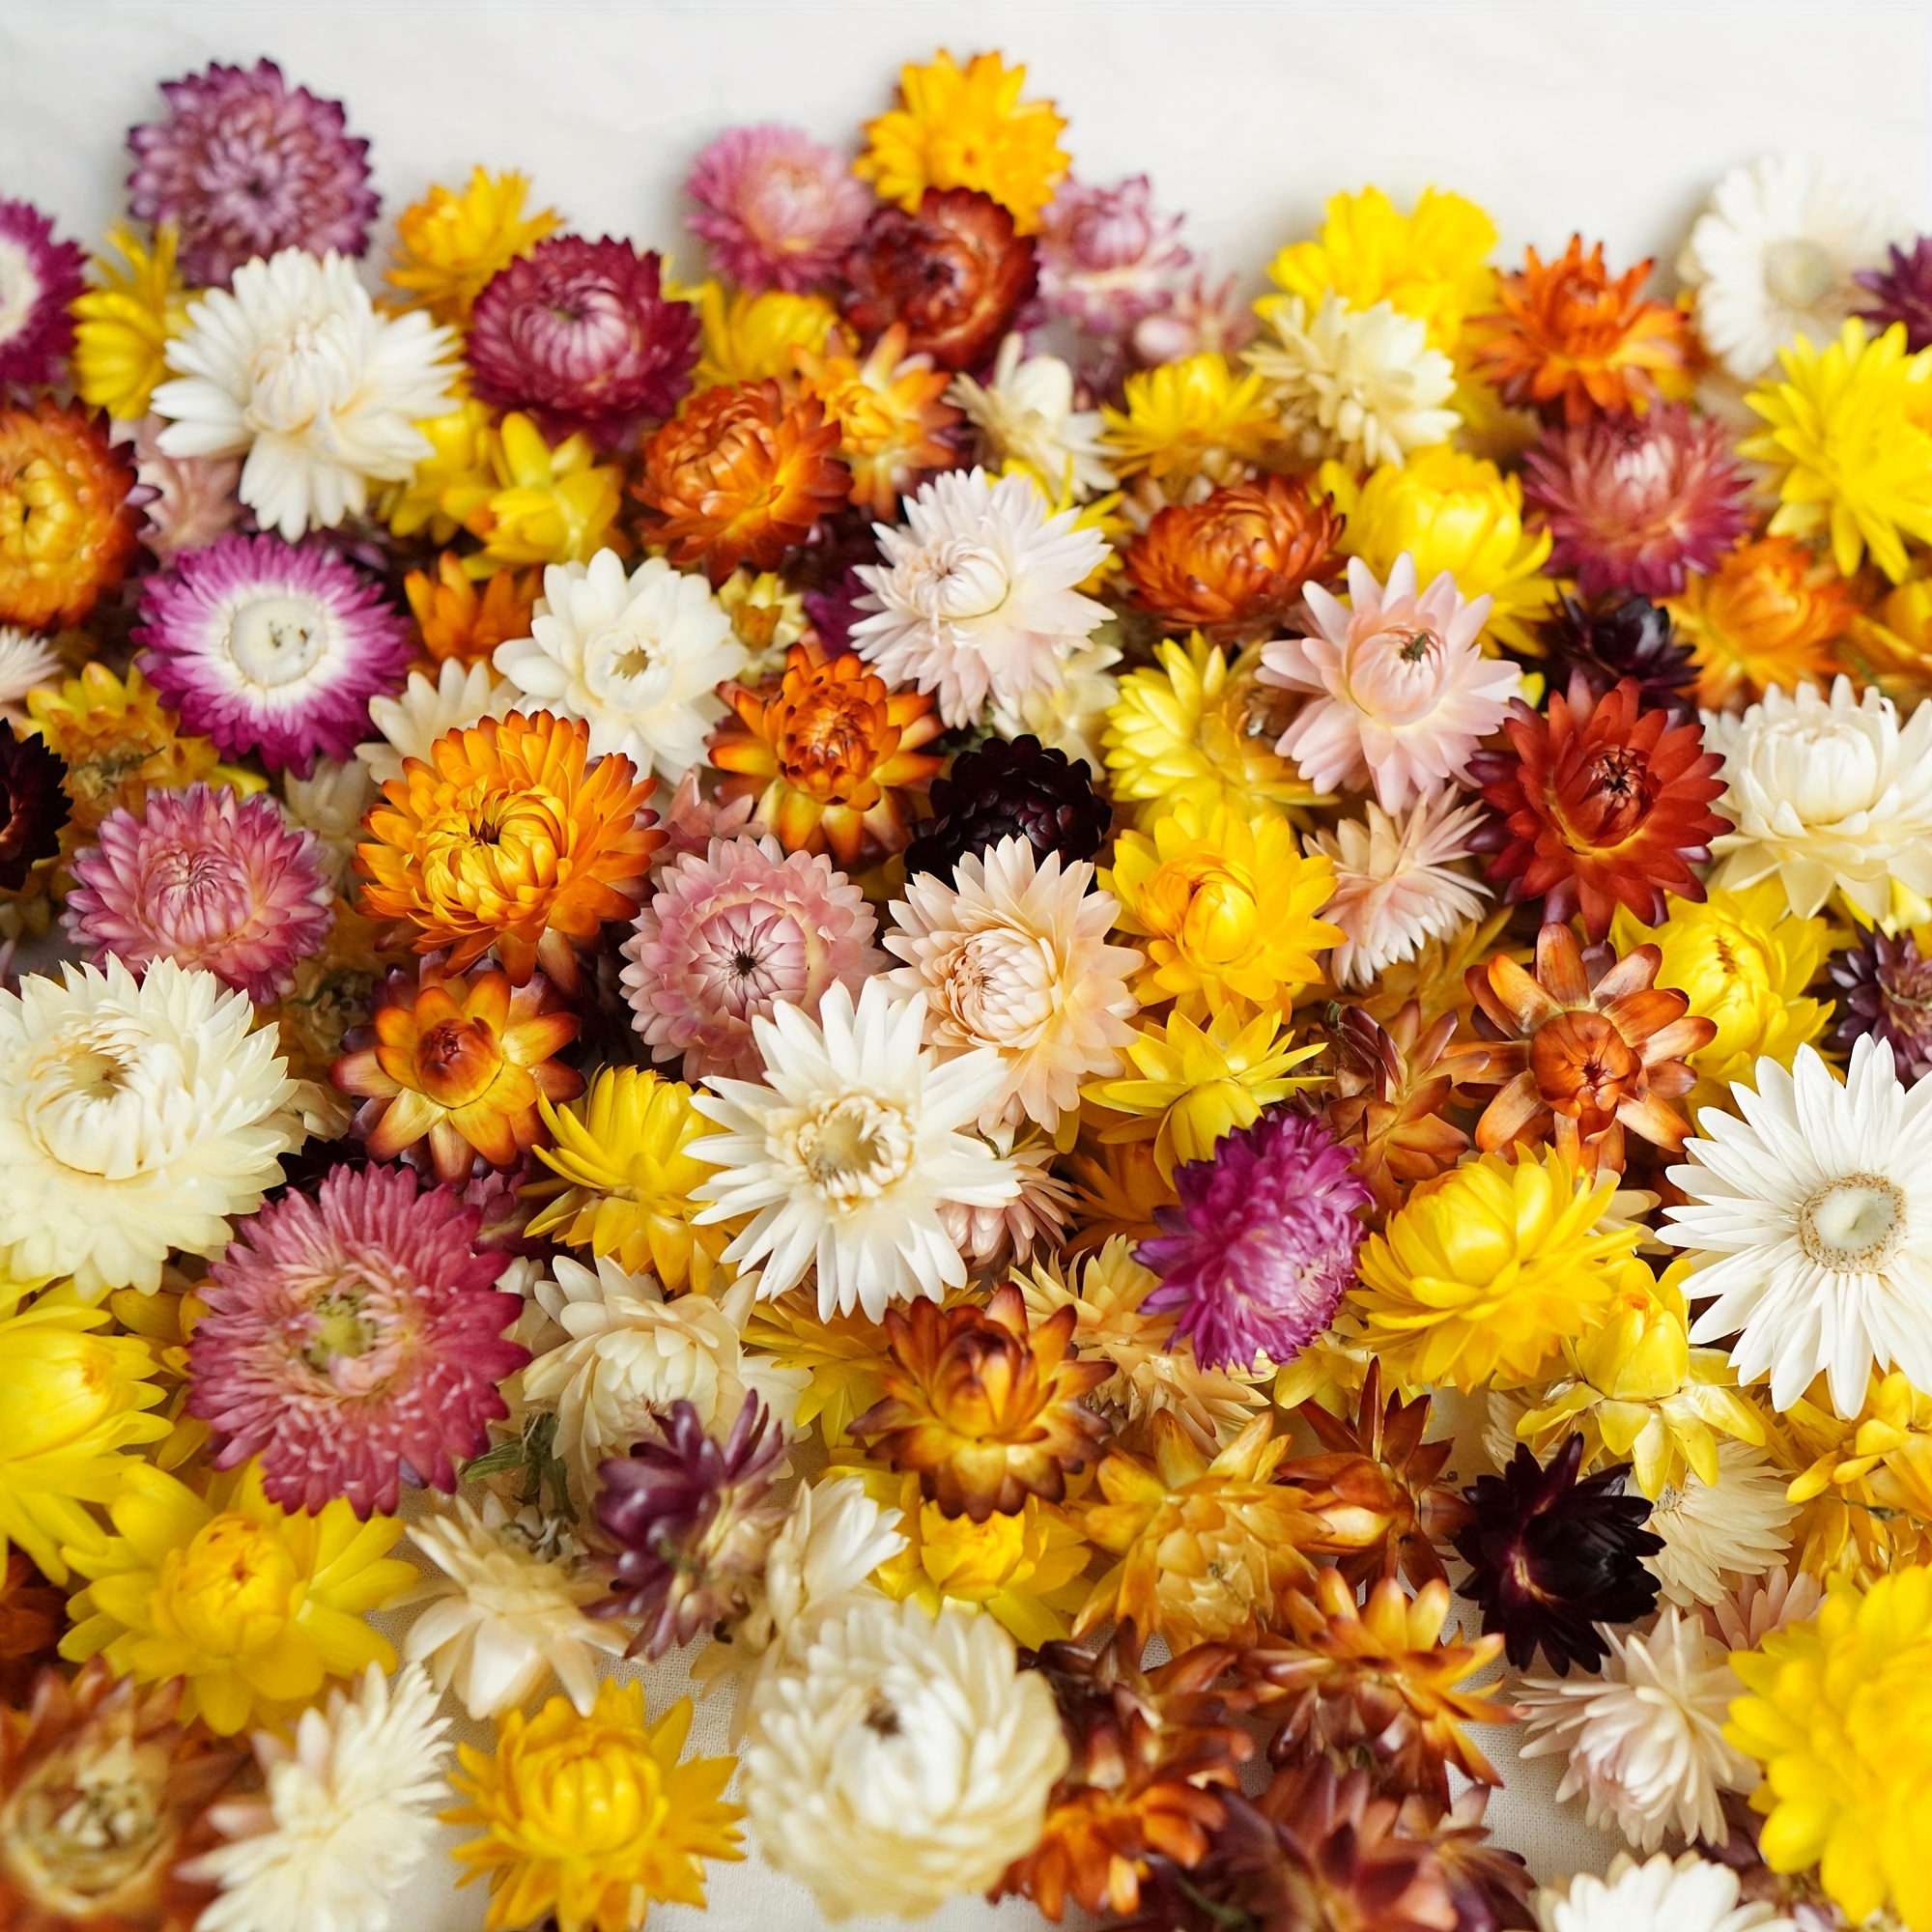 

50/100pcs Mix Dried Flower Daisy Bouquet Chrysanthemum Dry Flower For Vase Home Decor Party Diy Arrangement Wheat Straw Bulk, Home Decor, Scene Decor, Theme Party Decor